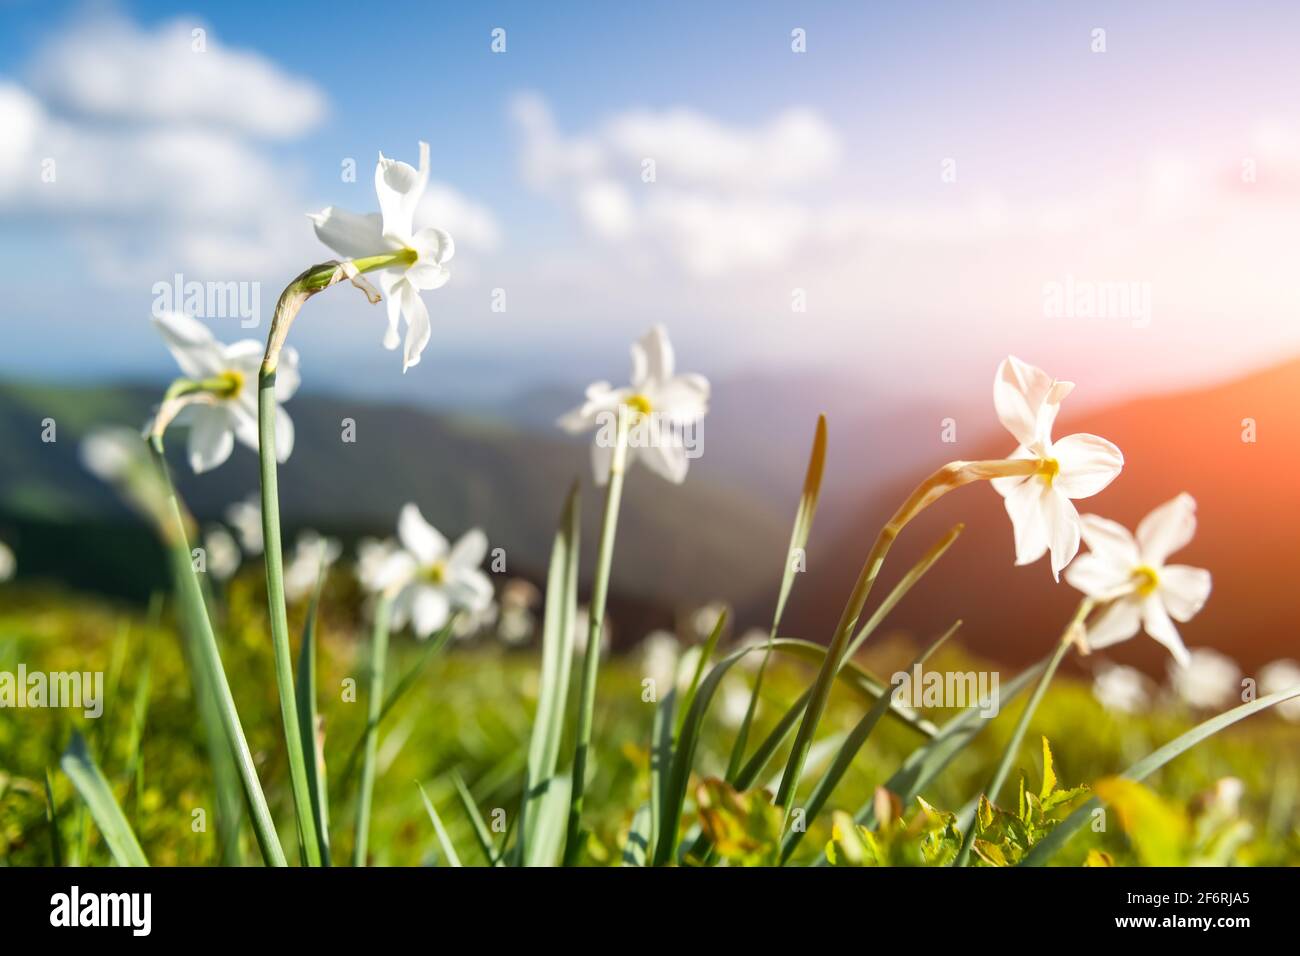 Prato di montagna coperto di fiori narciso bianchi. Carpazi, Europa. Fotografia di paesaggio Foto Stock